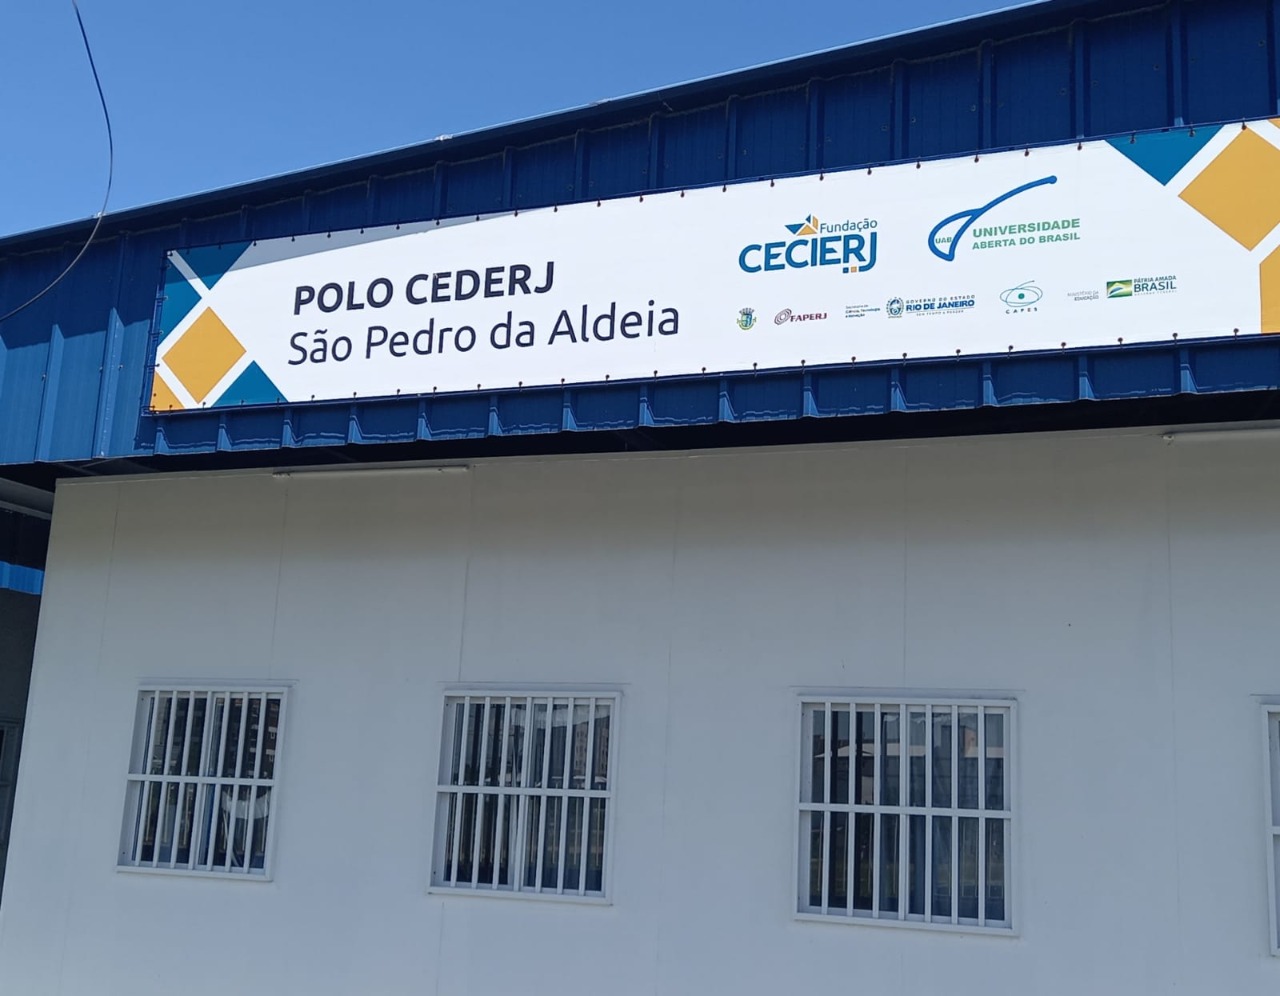 Cederj São Pedro da Aldeia